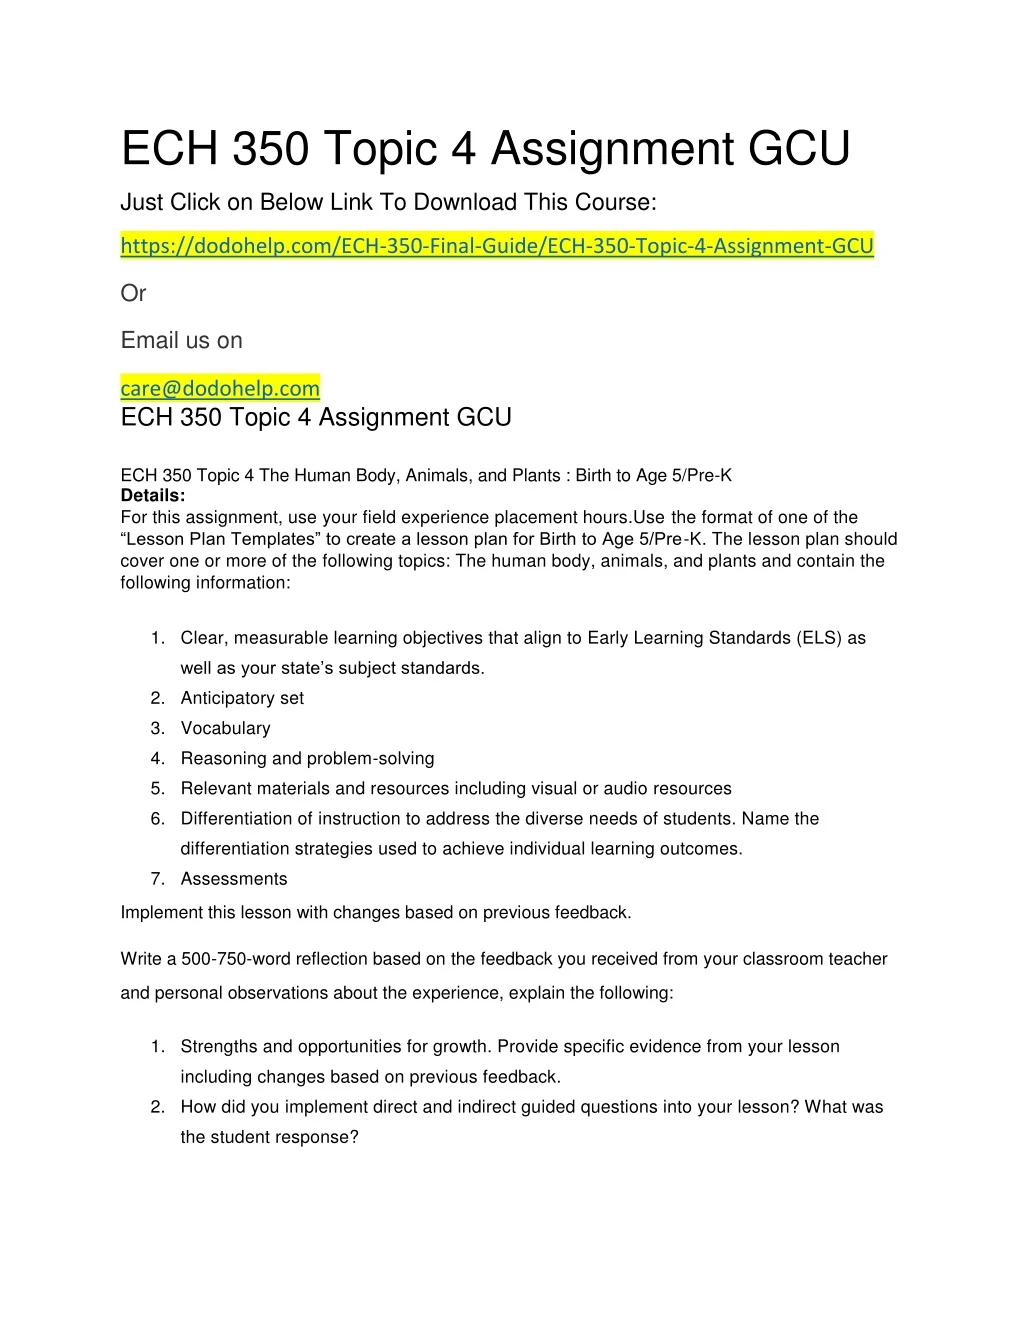 ech 350 topic 4 assignment gcu